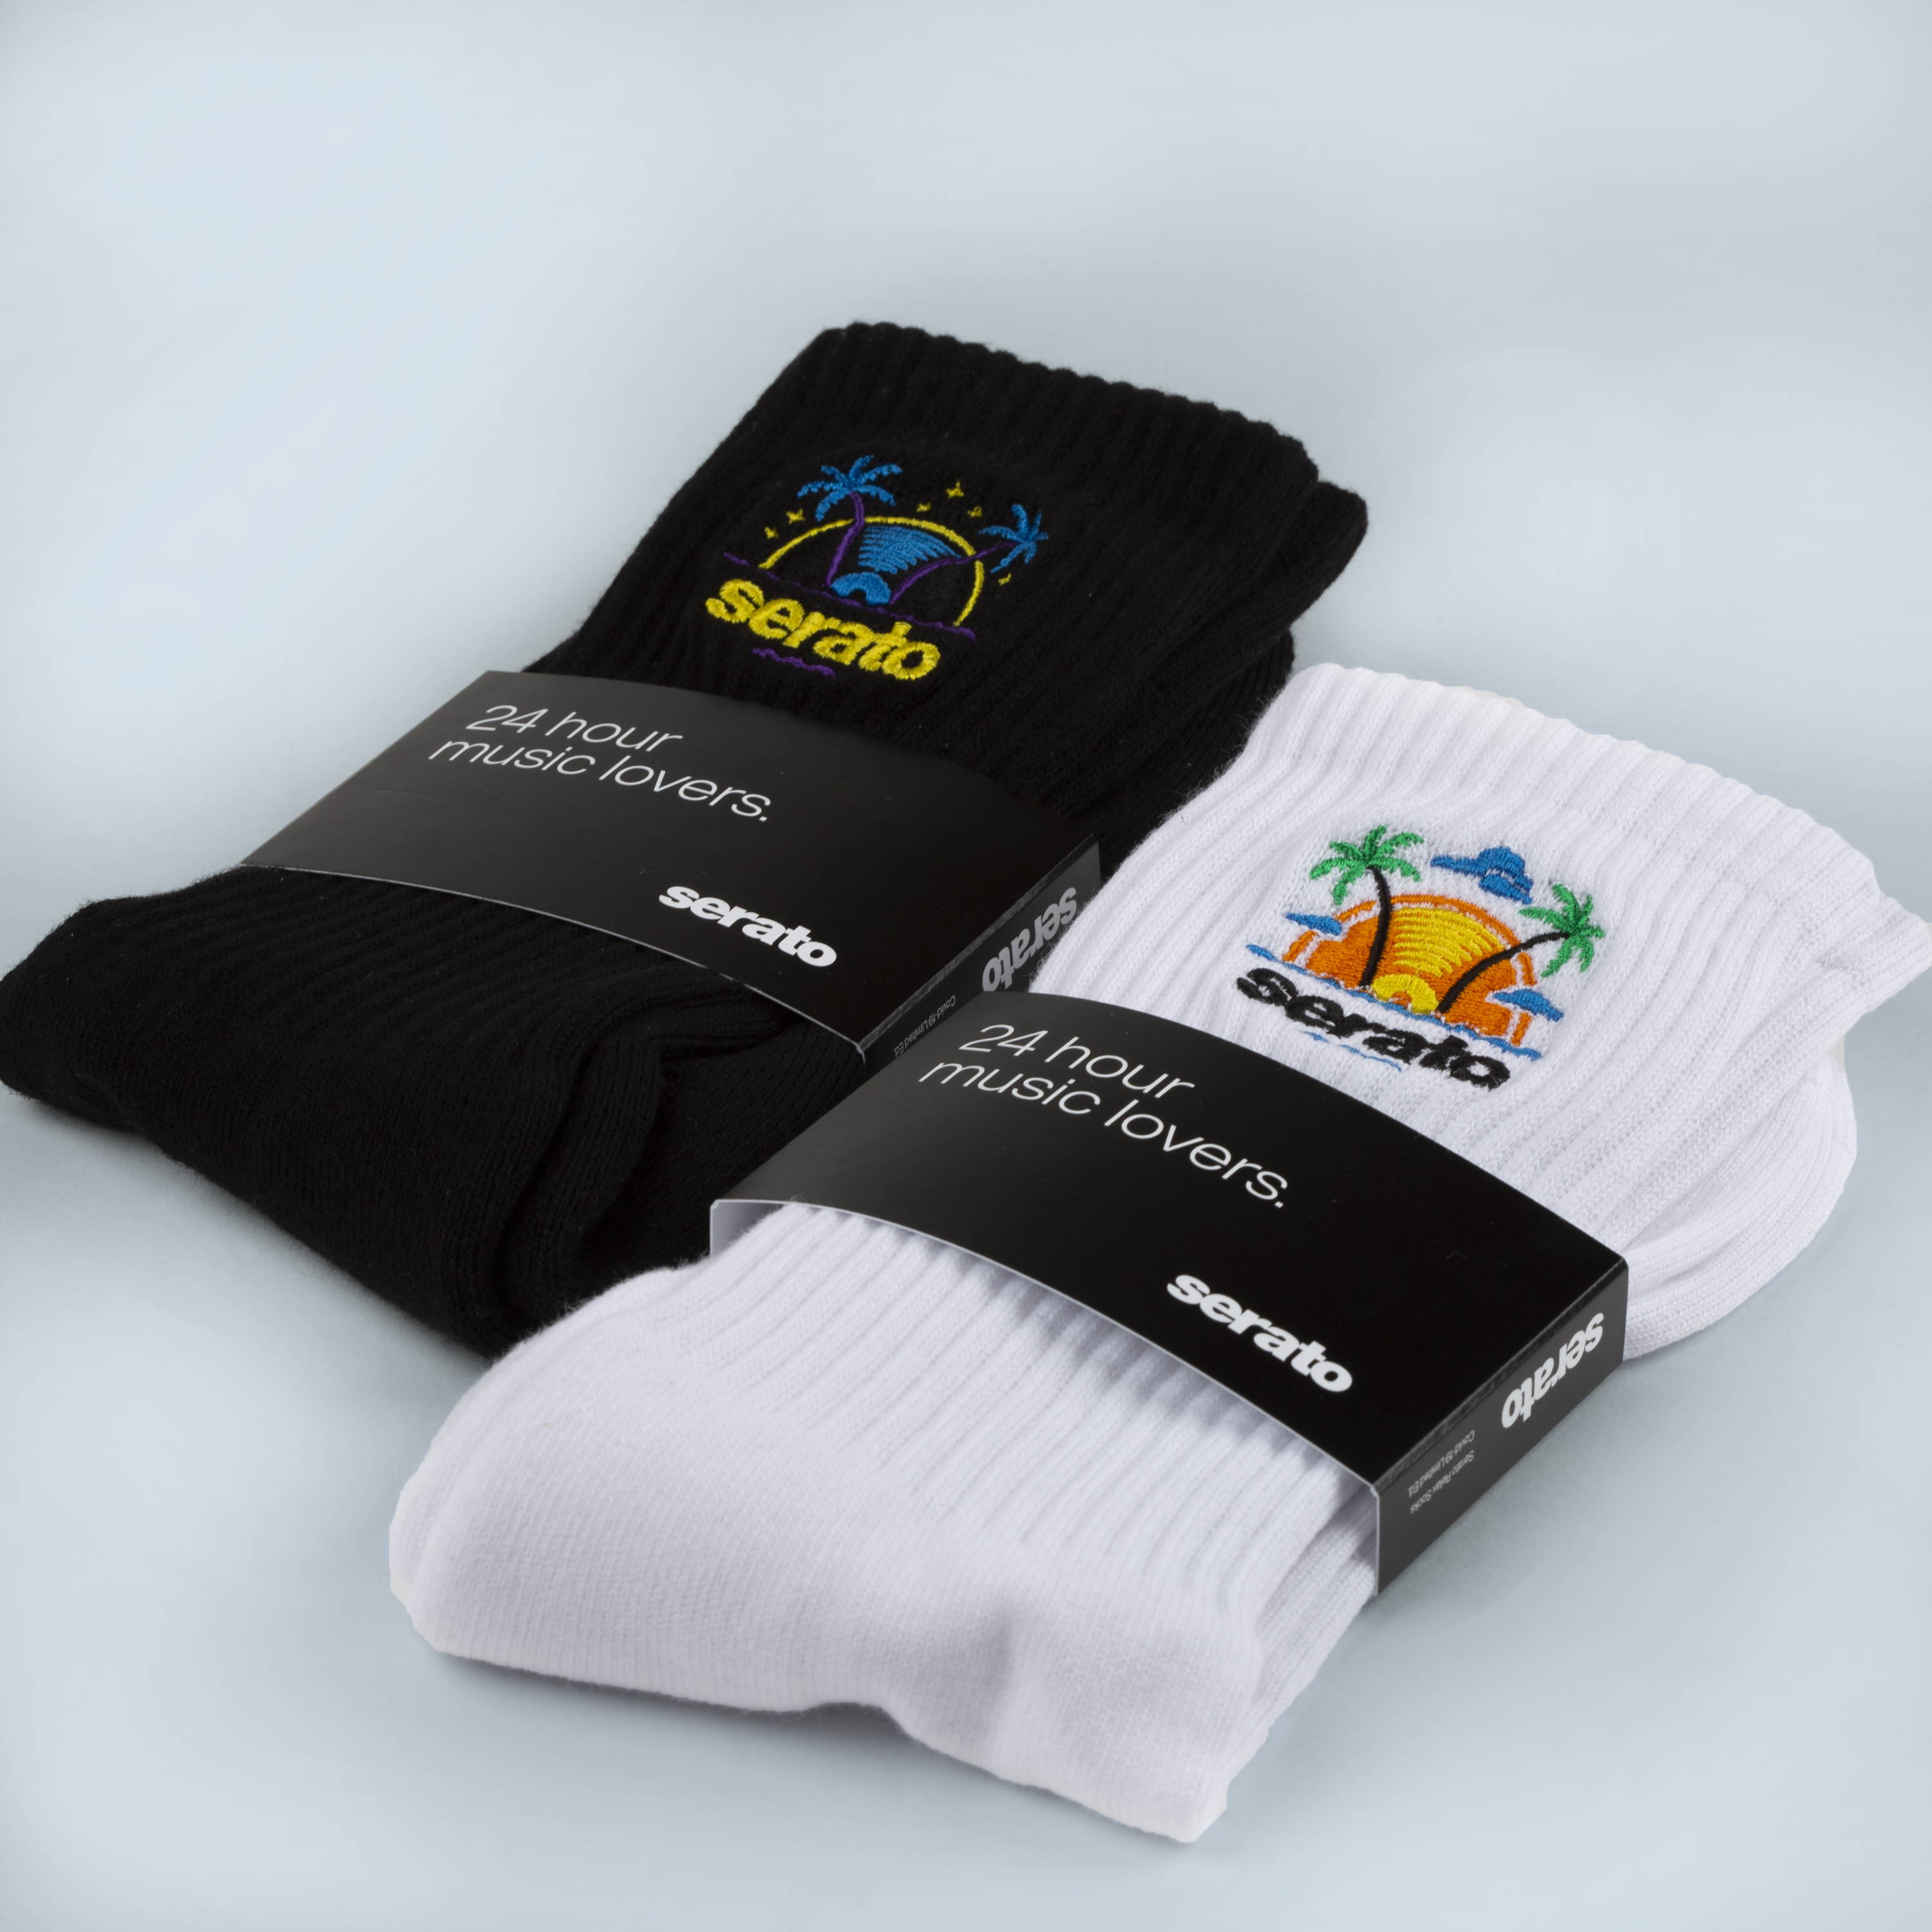 Custom sock packaging